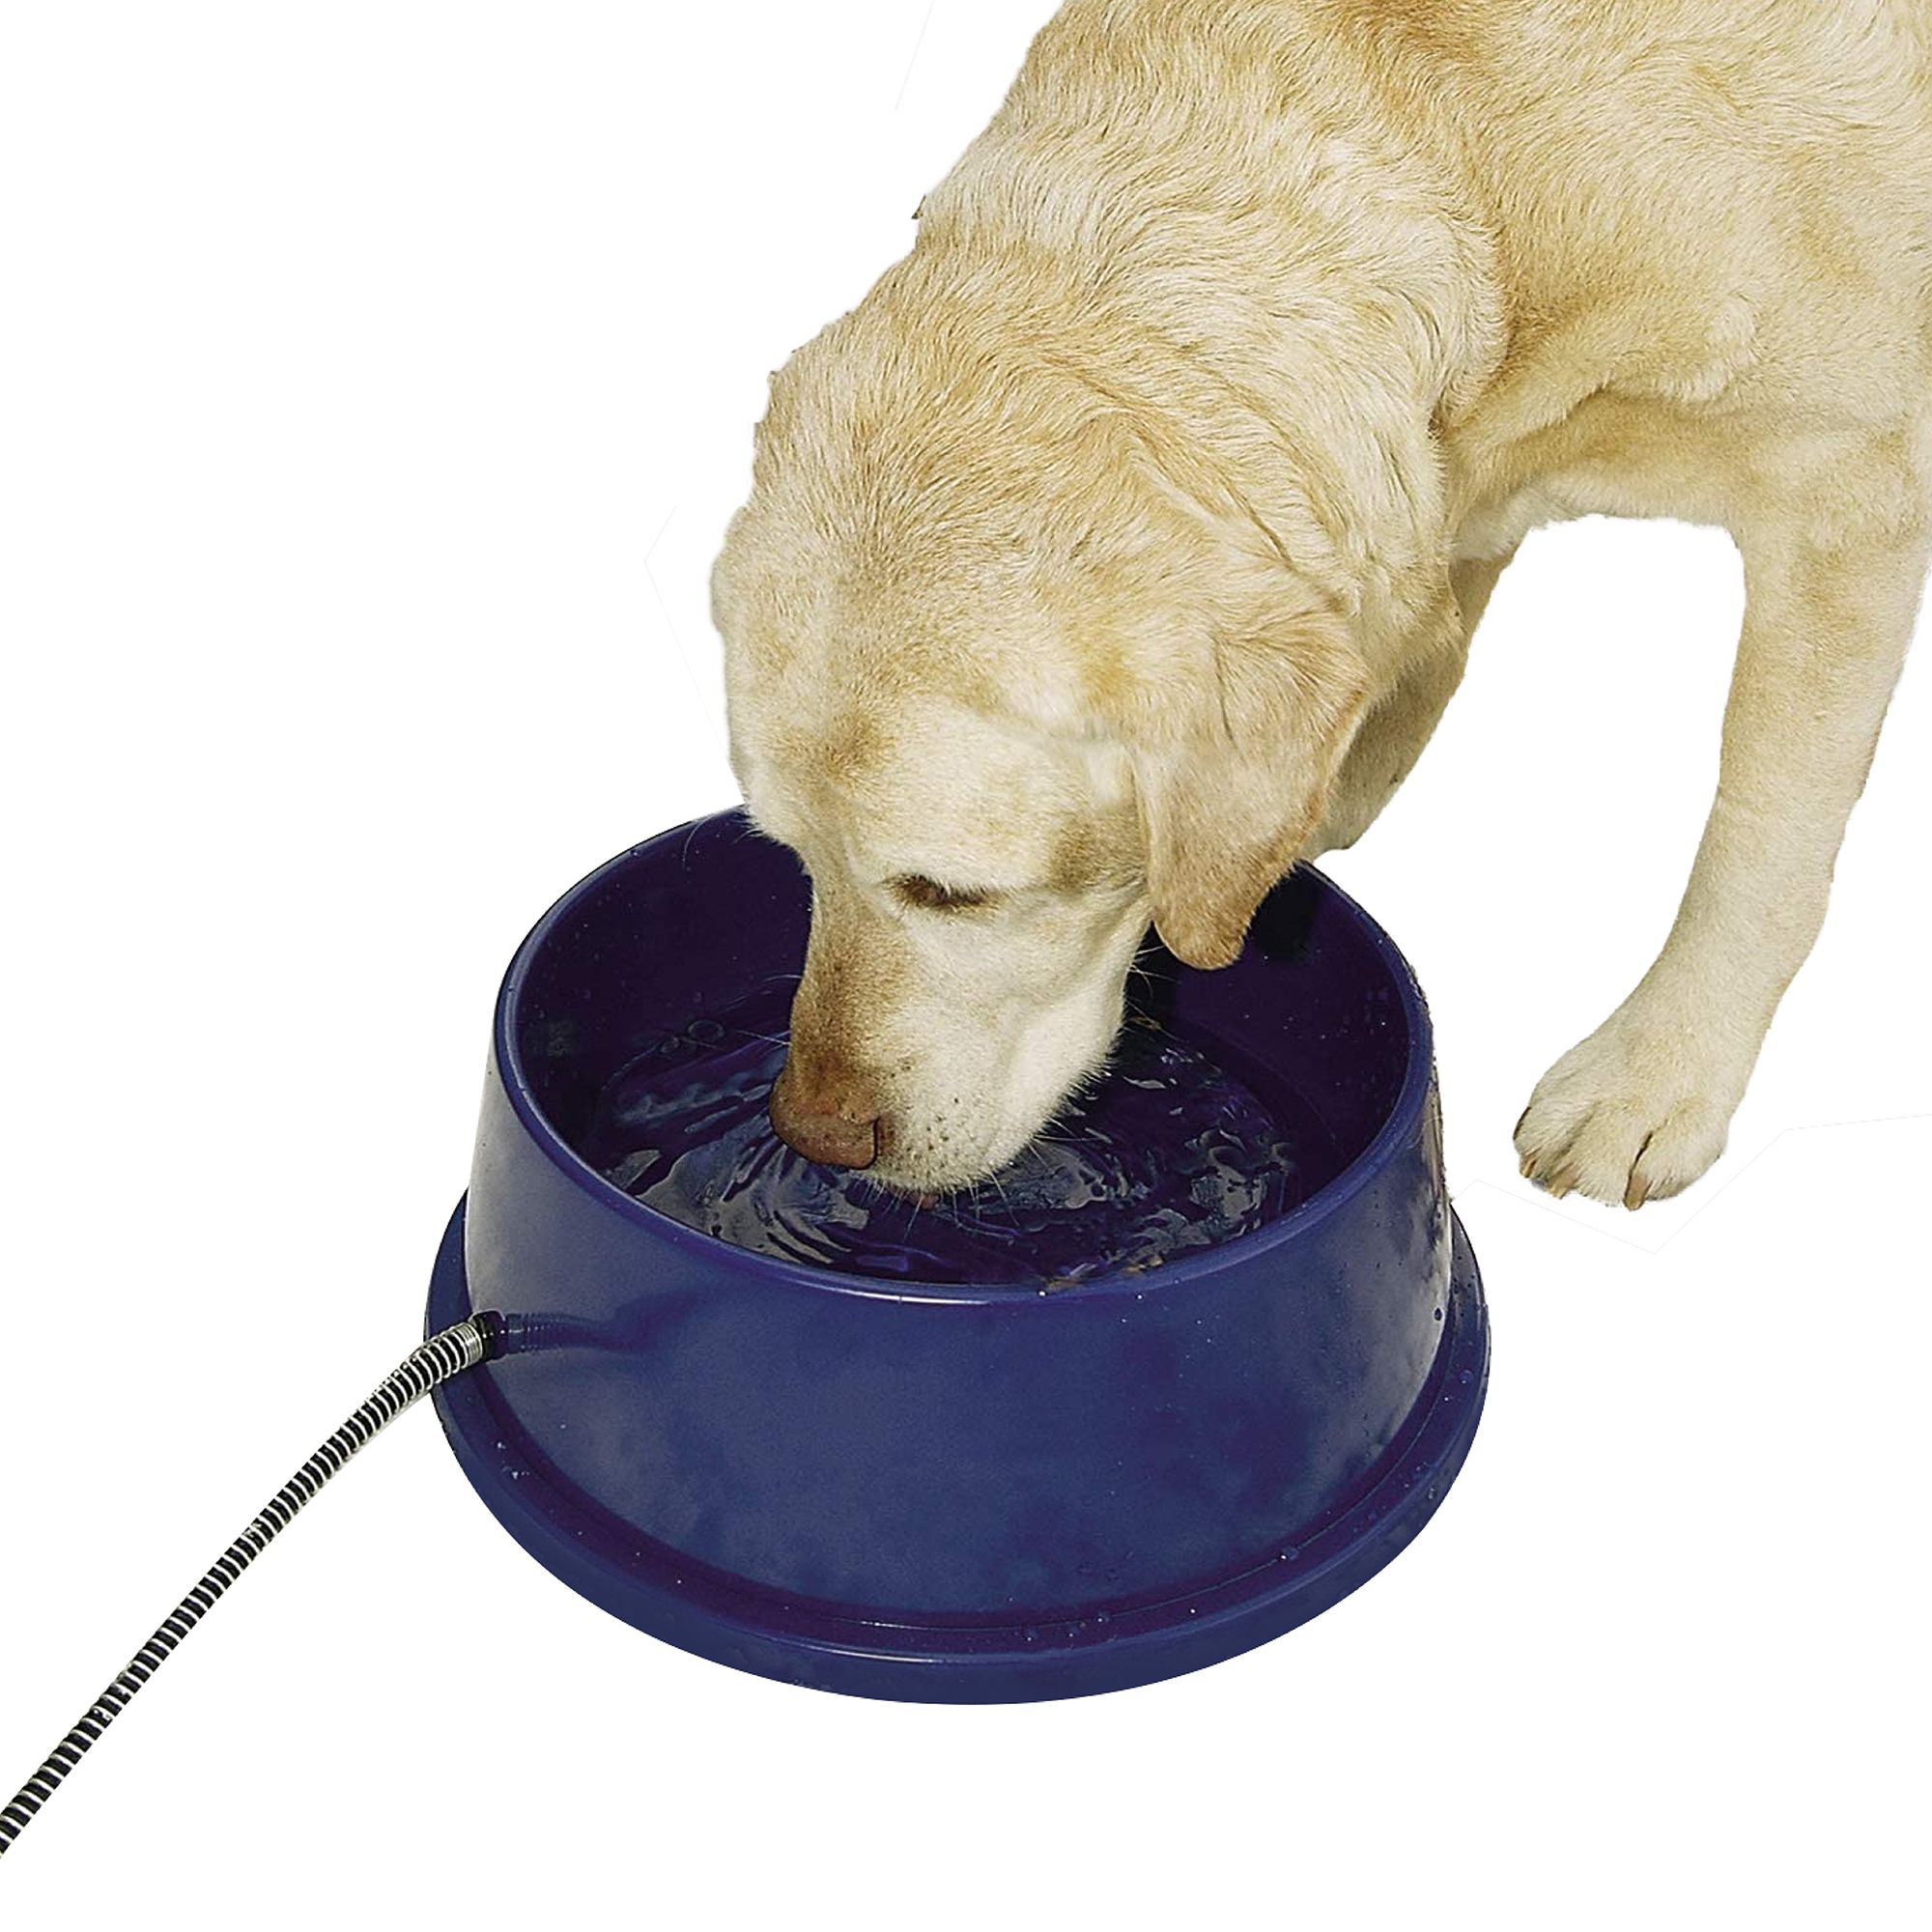 heated dog bowl